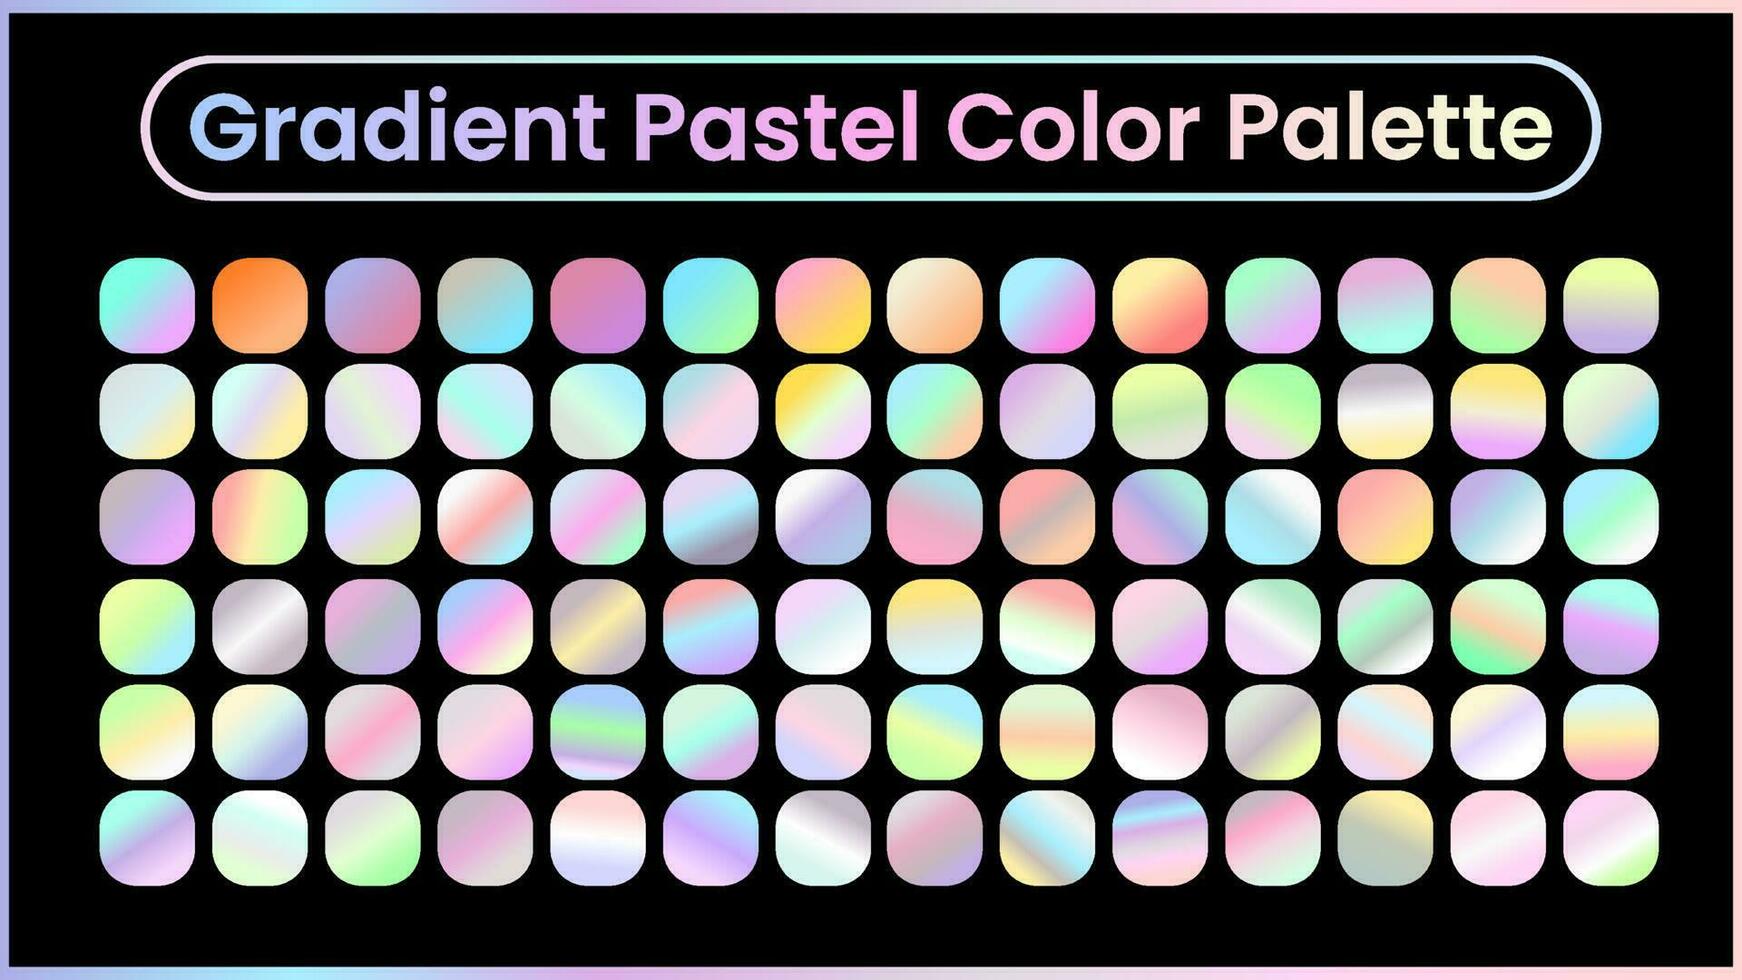 Gradient Pastell- bunt Palette. Vektor